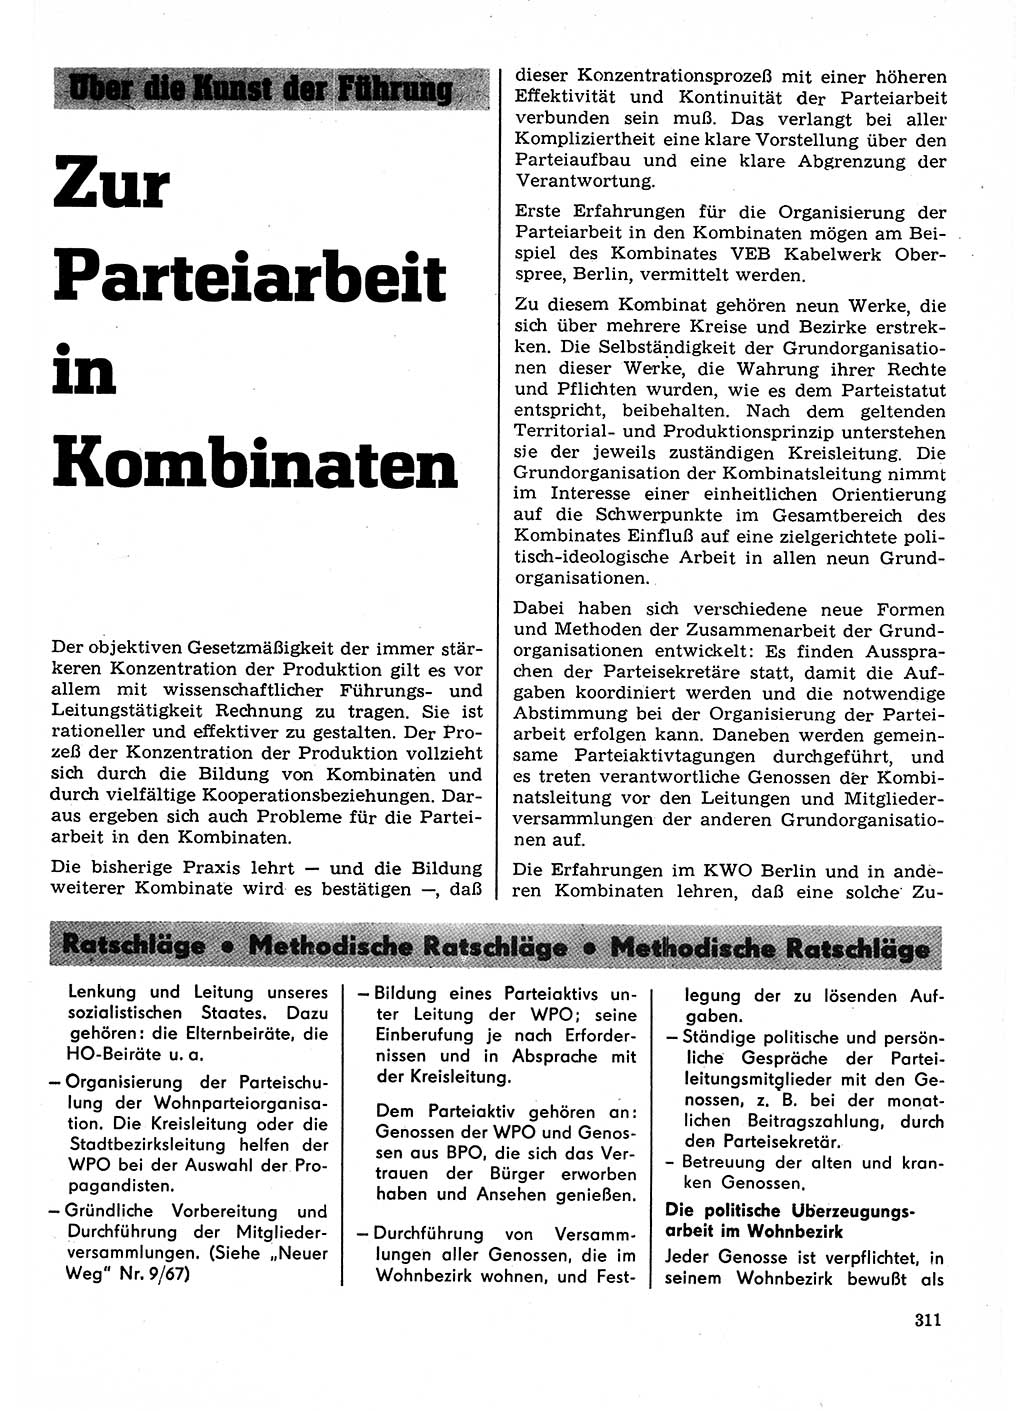 Neuer Weg (NW), Organ des Zentralkomitees (ZK) der SED (Sozialistische Einheitspartei Deutschlands) für Fragen des Parteilebens, 23. Jahrgang [Deutsche Demokratische Republik (DDR)] 1968, Seite 311 (NW ZK SED DDR 1968, S. 311)